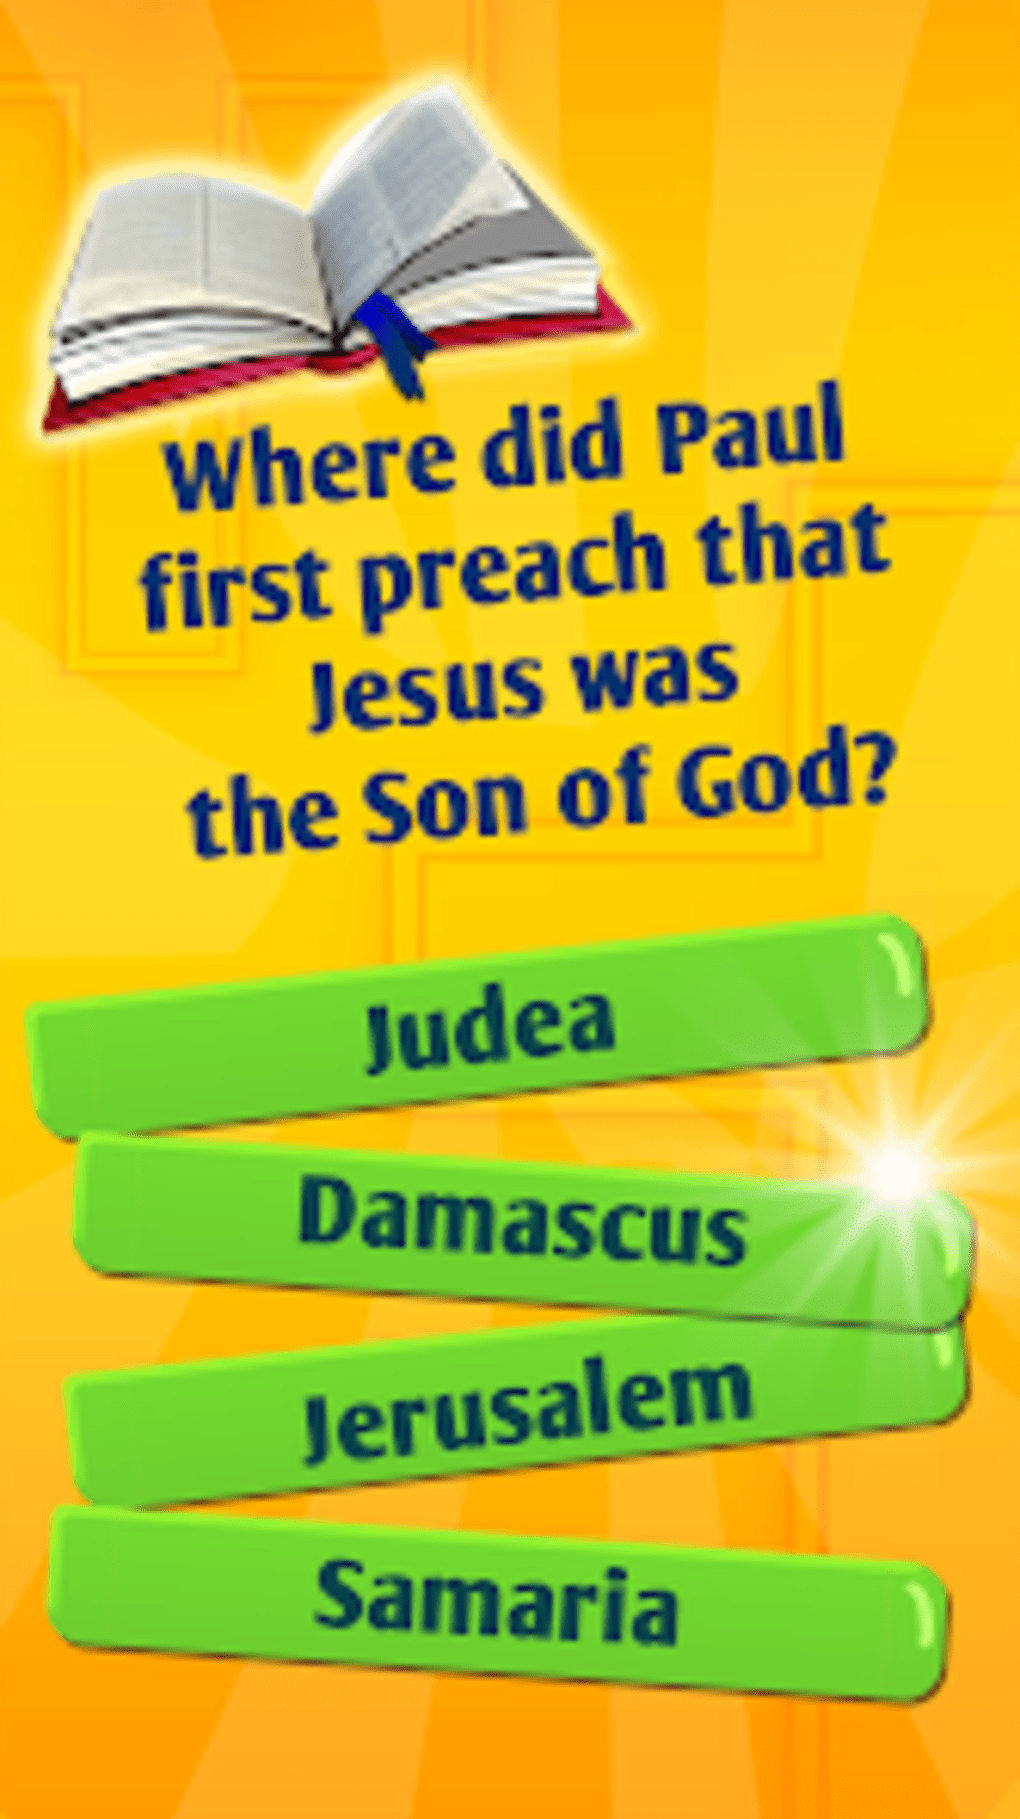 Quiz Jesus: Trivial Bíblia – Apps no Google Play